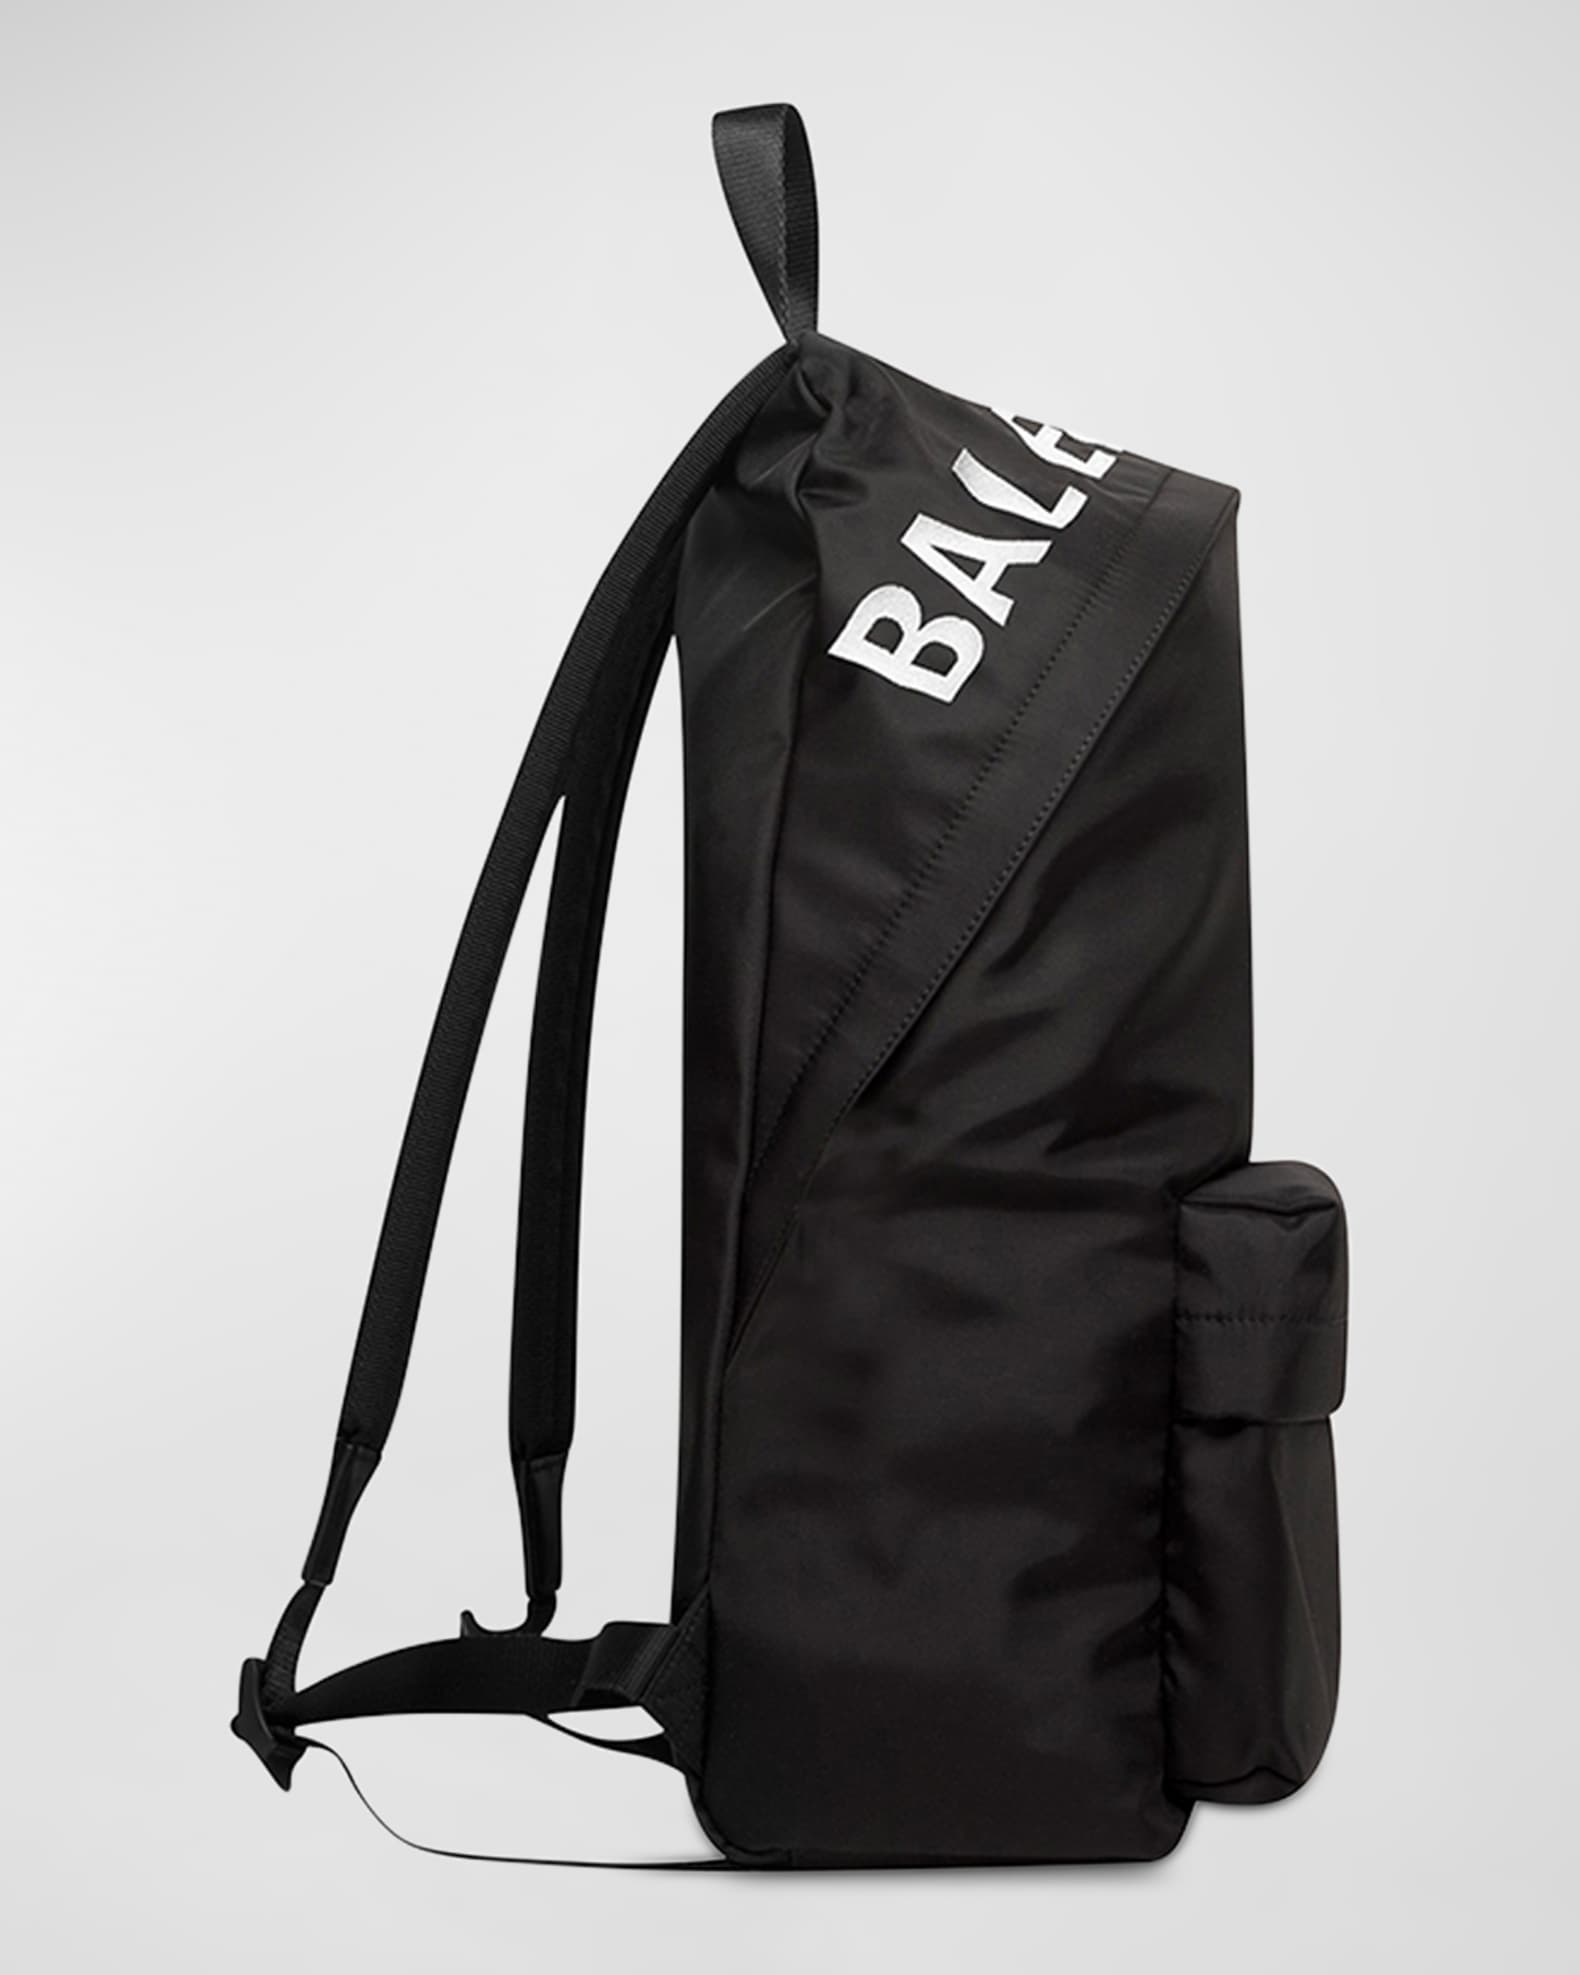 Balenciaga Wheel Logo Embroidered Camera Bag Black